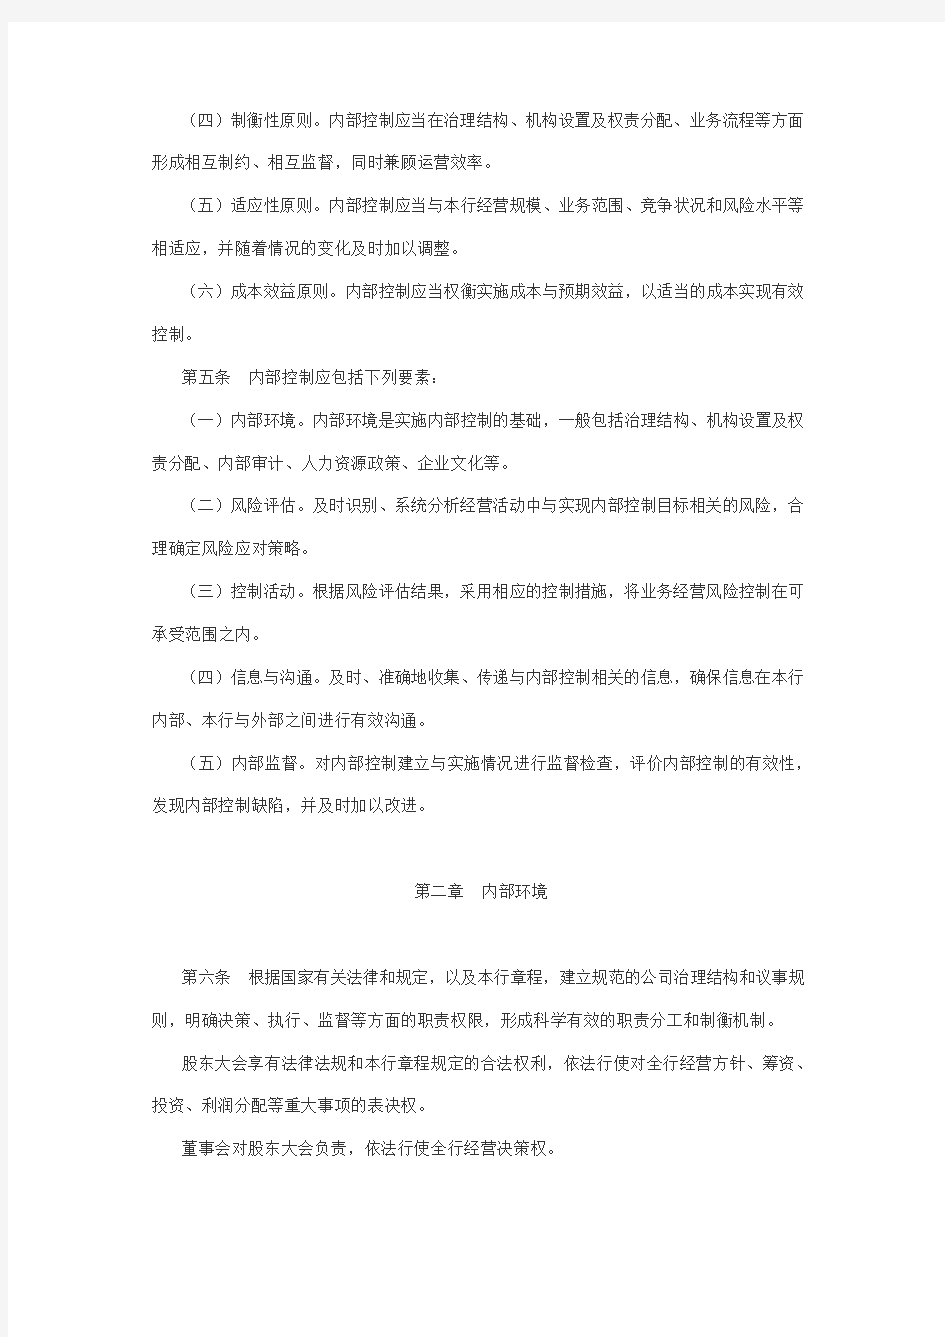 中国农业银行内部控制基本规定